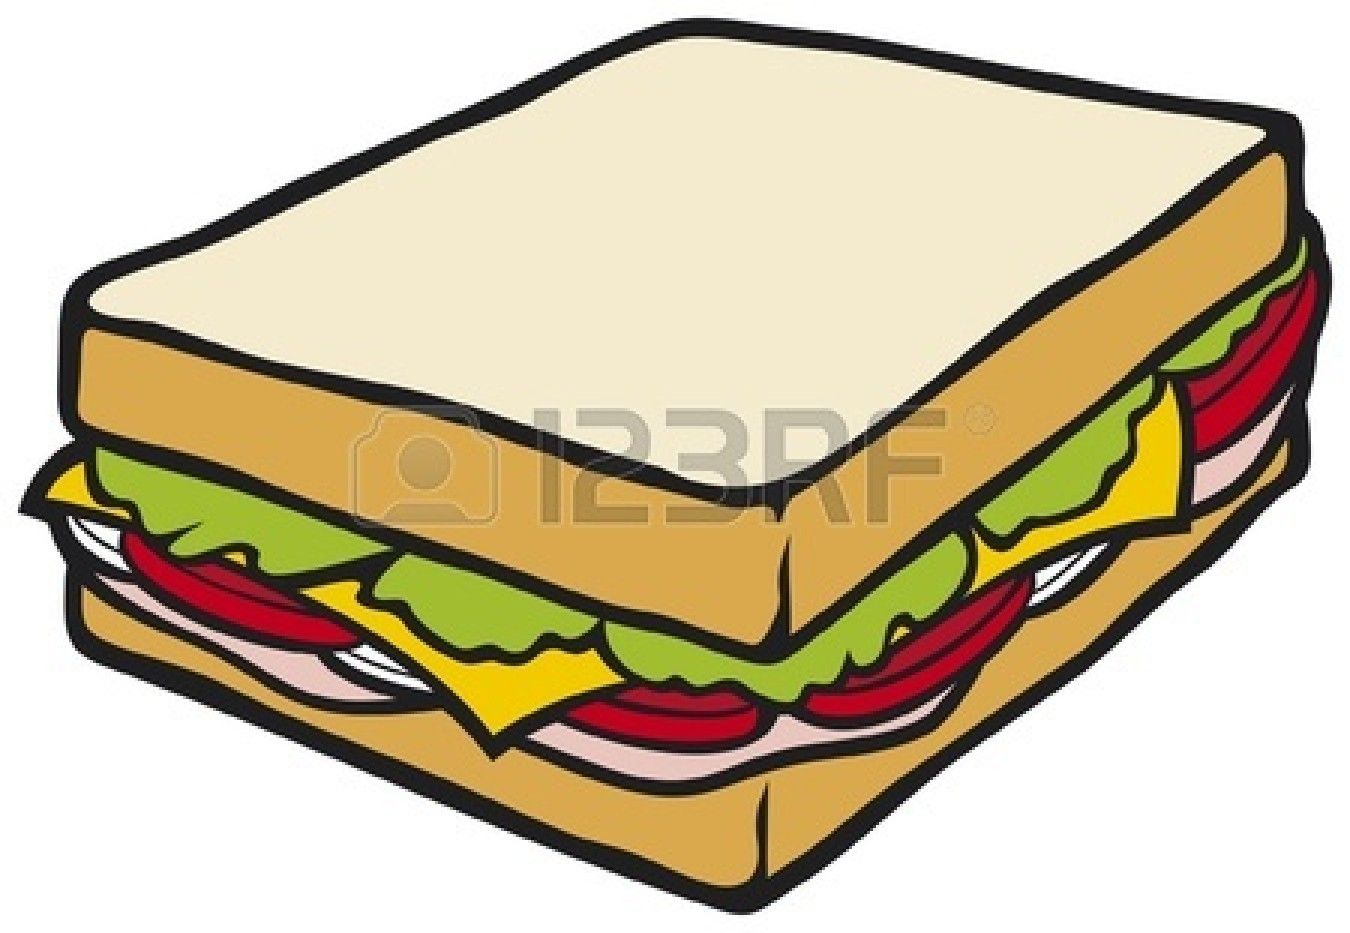 Cheese sandwich clipart.